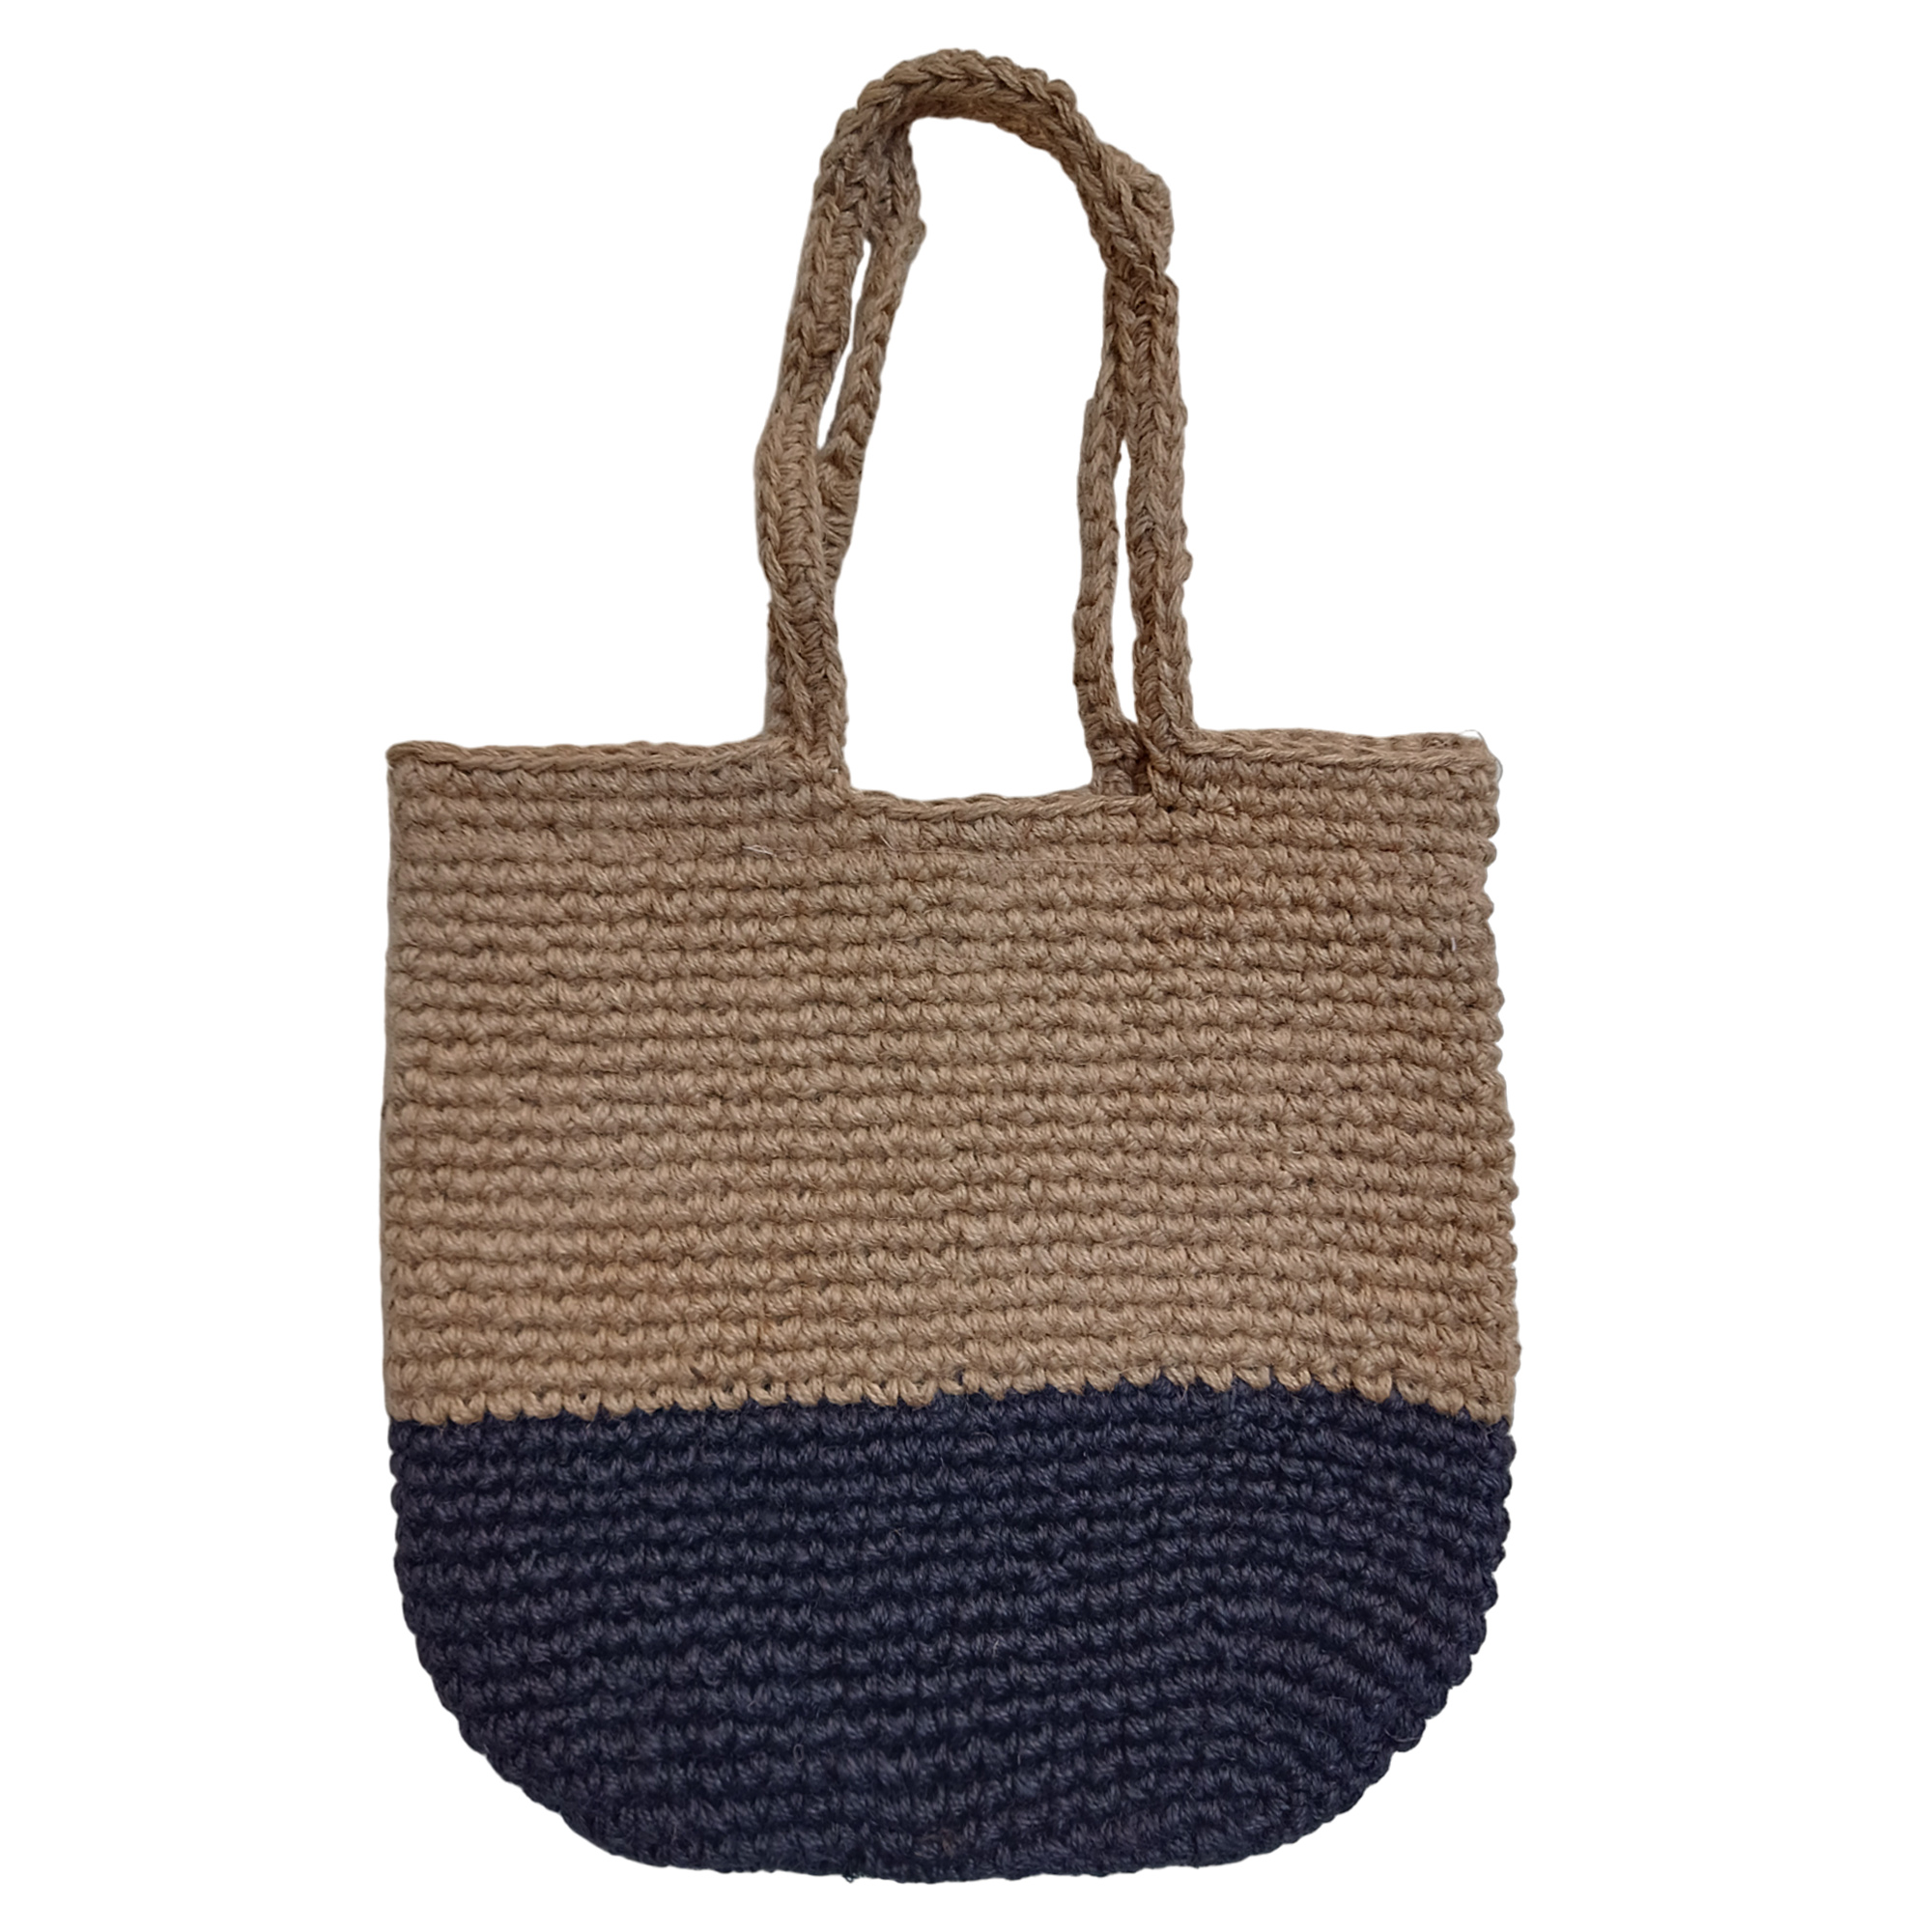 handmade crochet bags | eBay